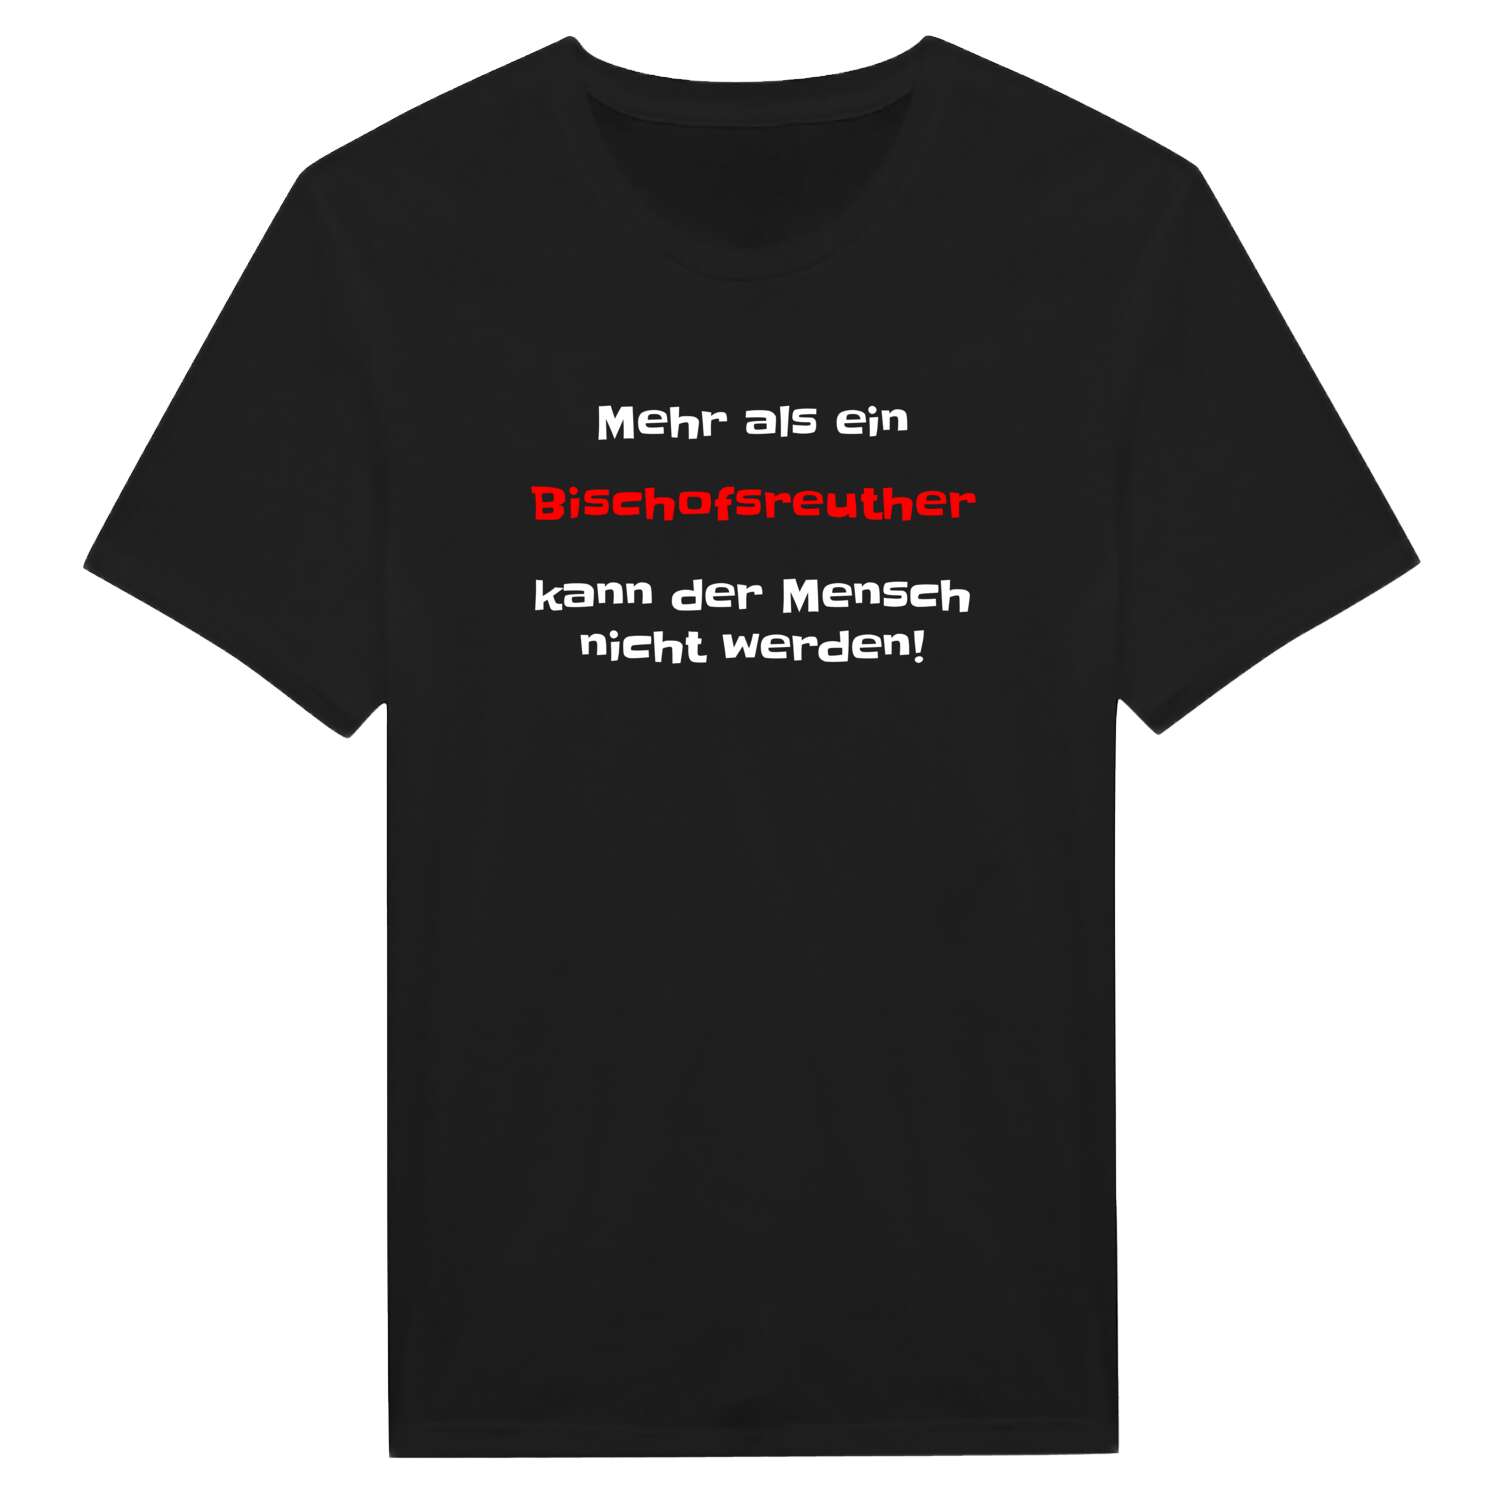 Bischofsreuth T-Shirt »Mehr als ein«